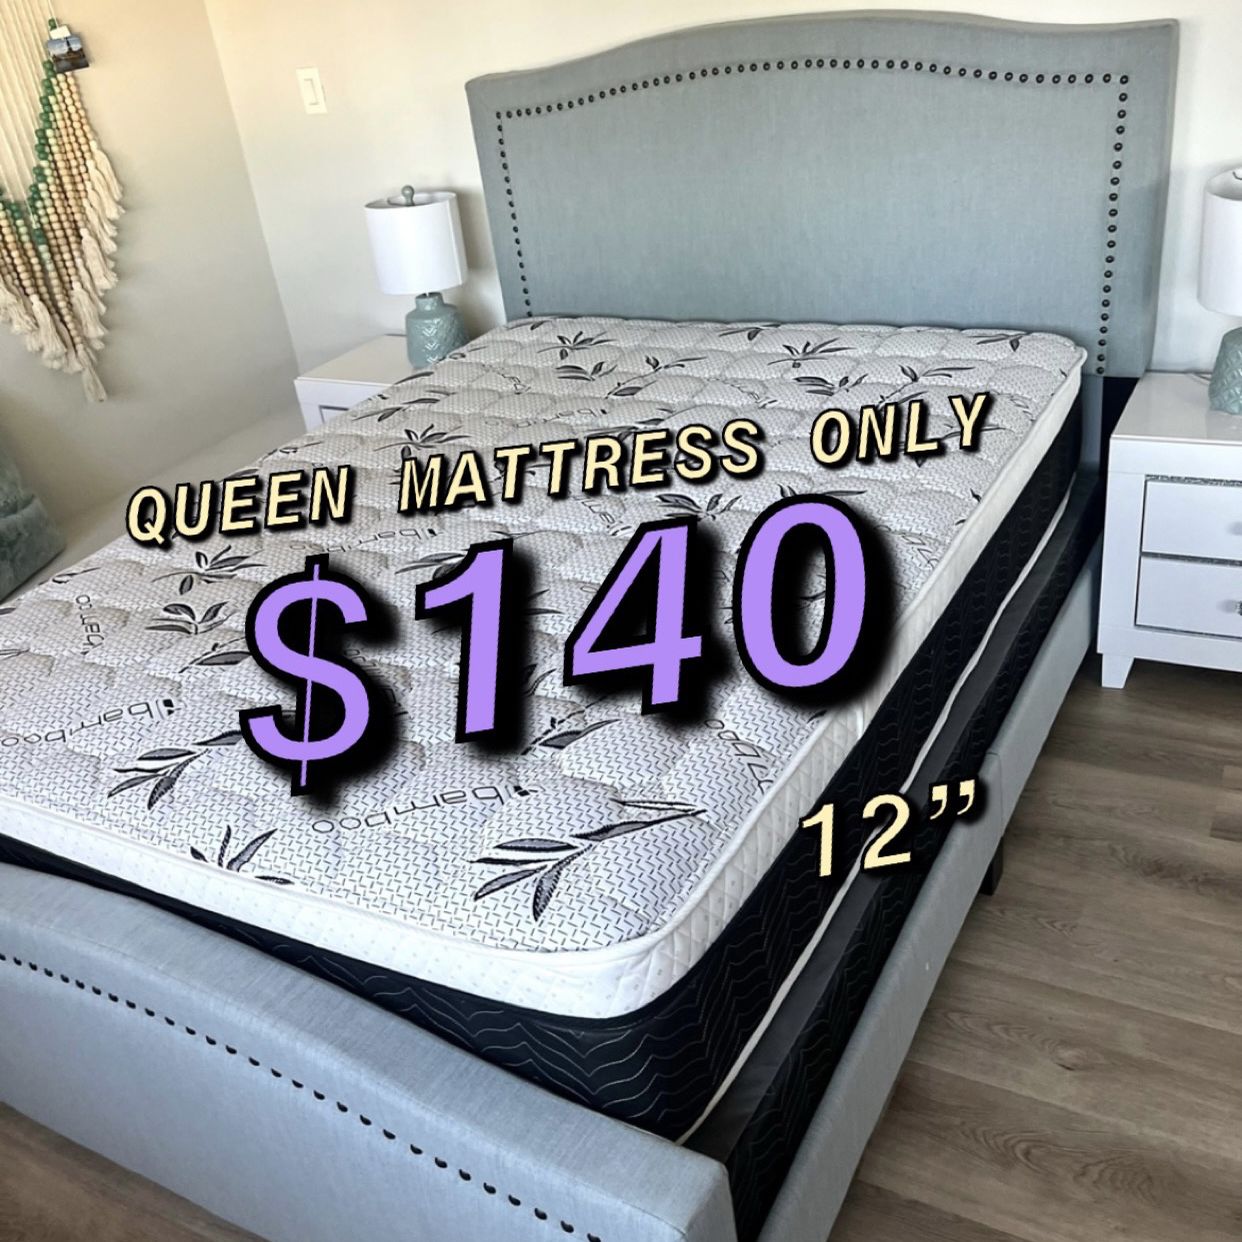  New Queen Mattress $140